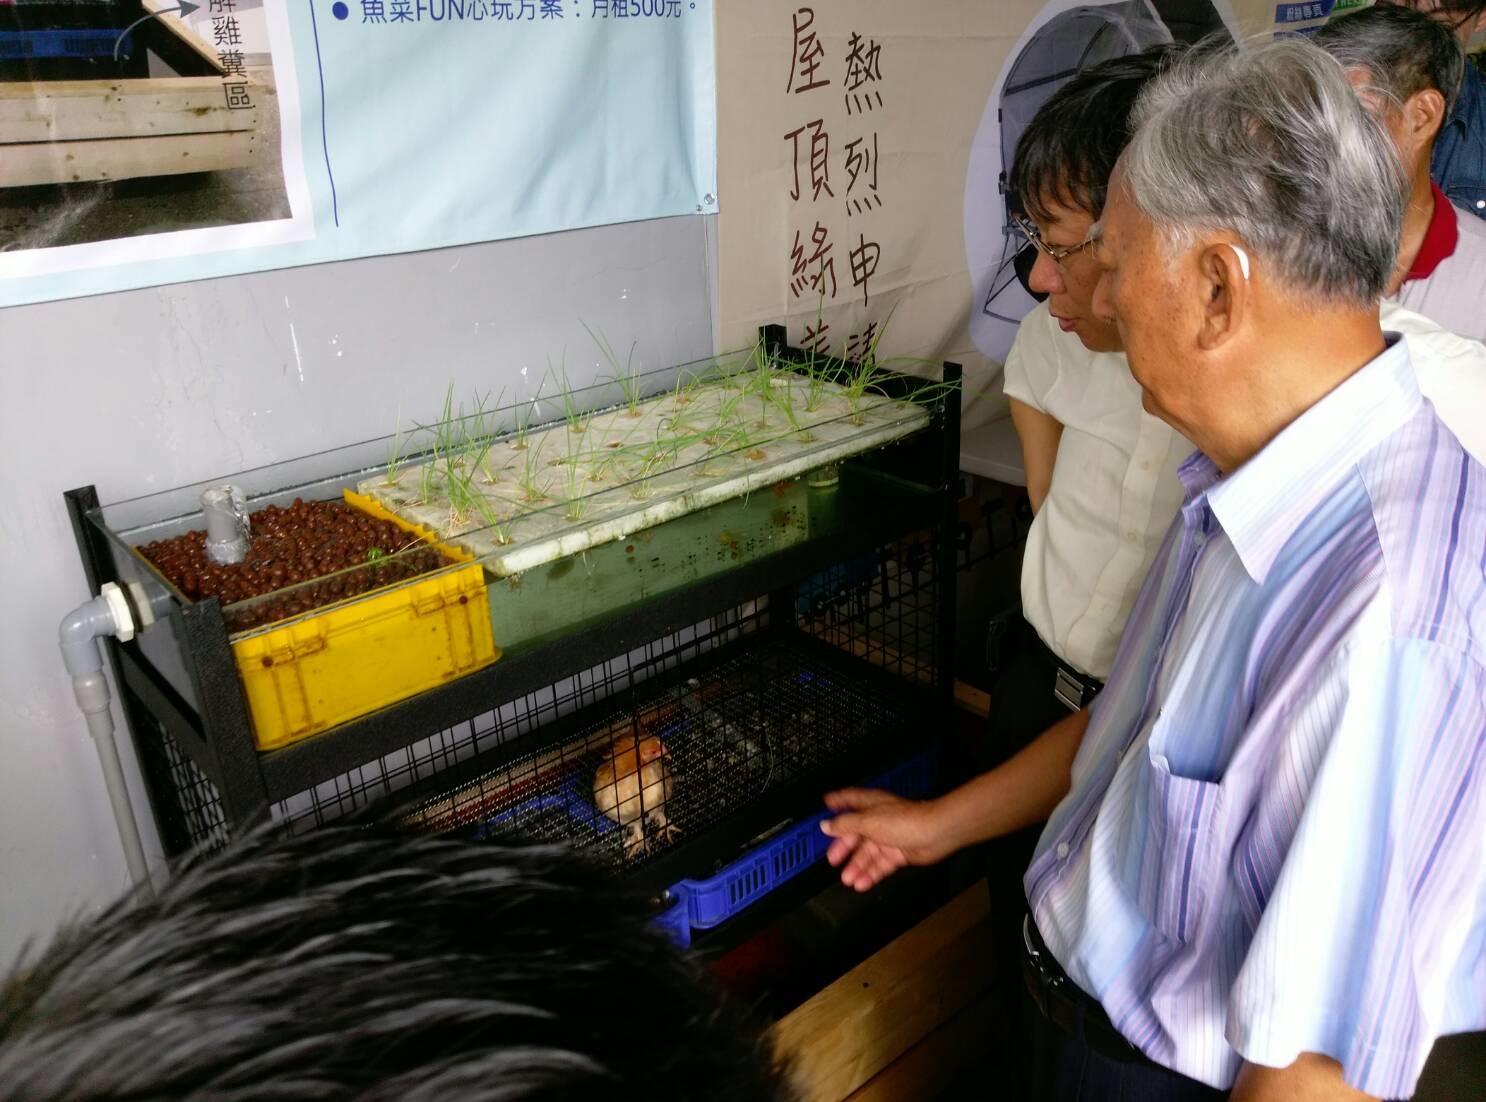 台北市政府柯文哲市長於107年9月15日前往圓山花博《園圃生活節》，參觀張伯淯同學設計的「有雞魚菜系統」